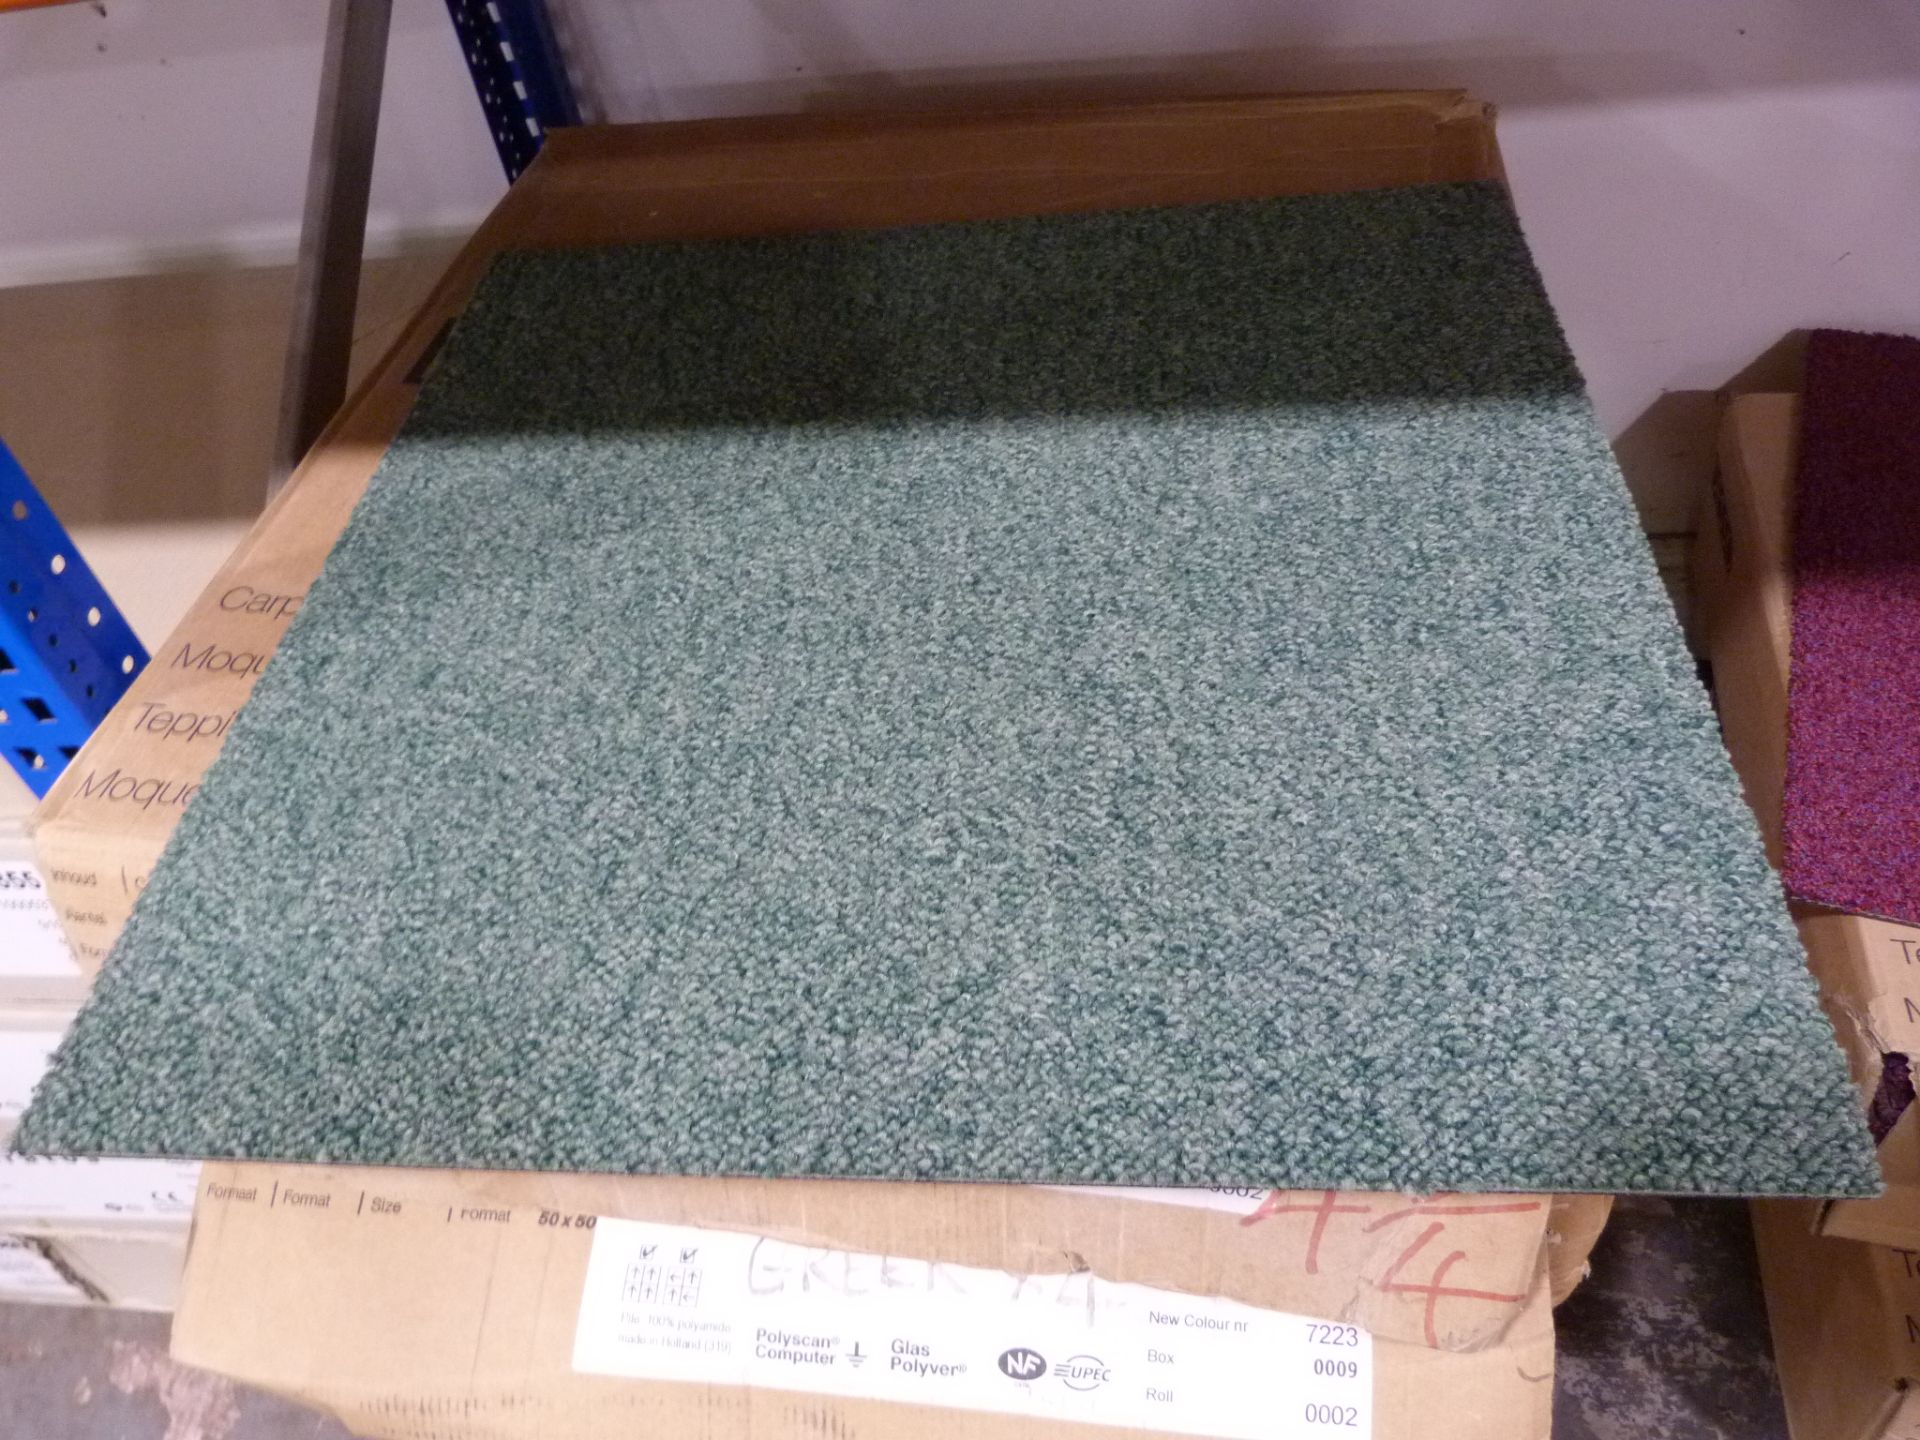 Box of 20 Escopallas Green 7223 Carpet Tiles